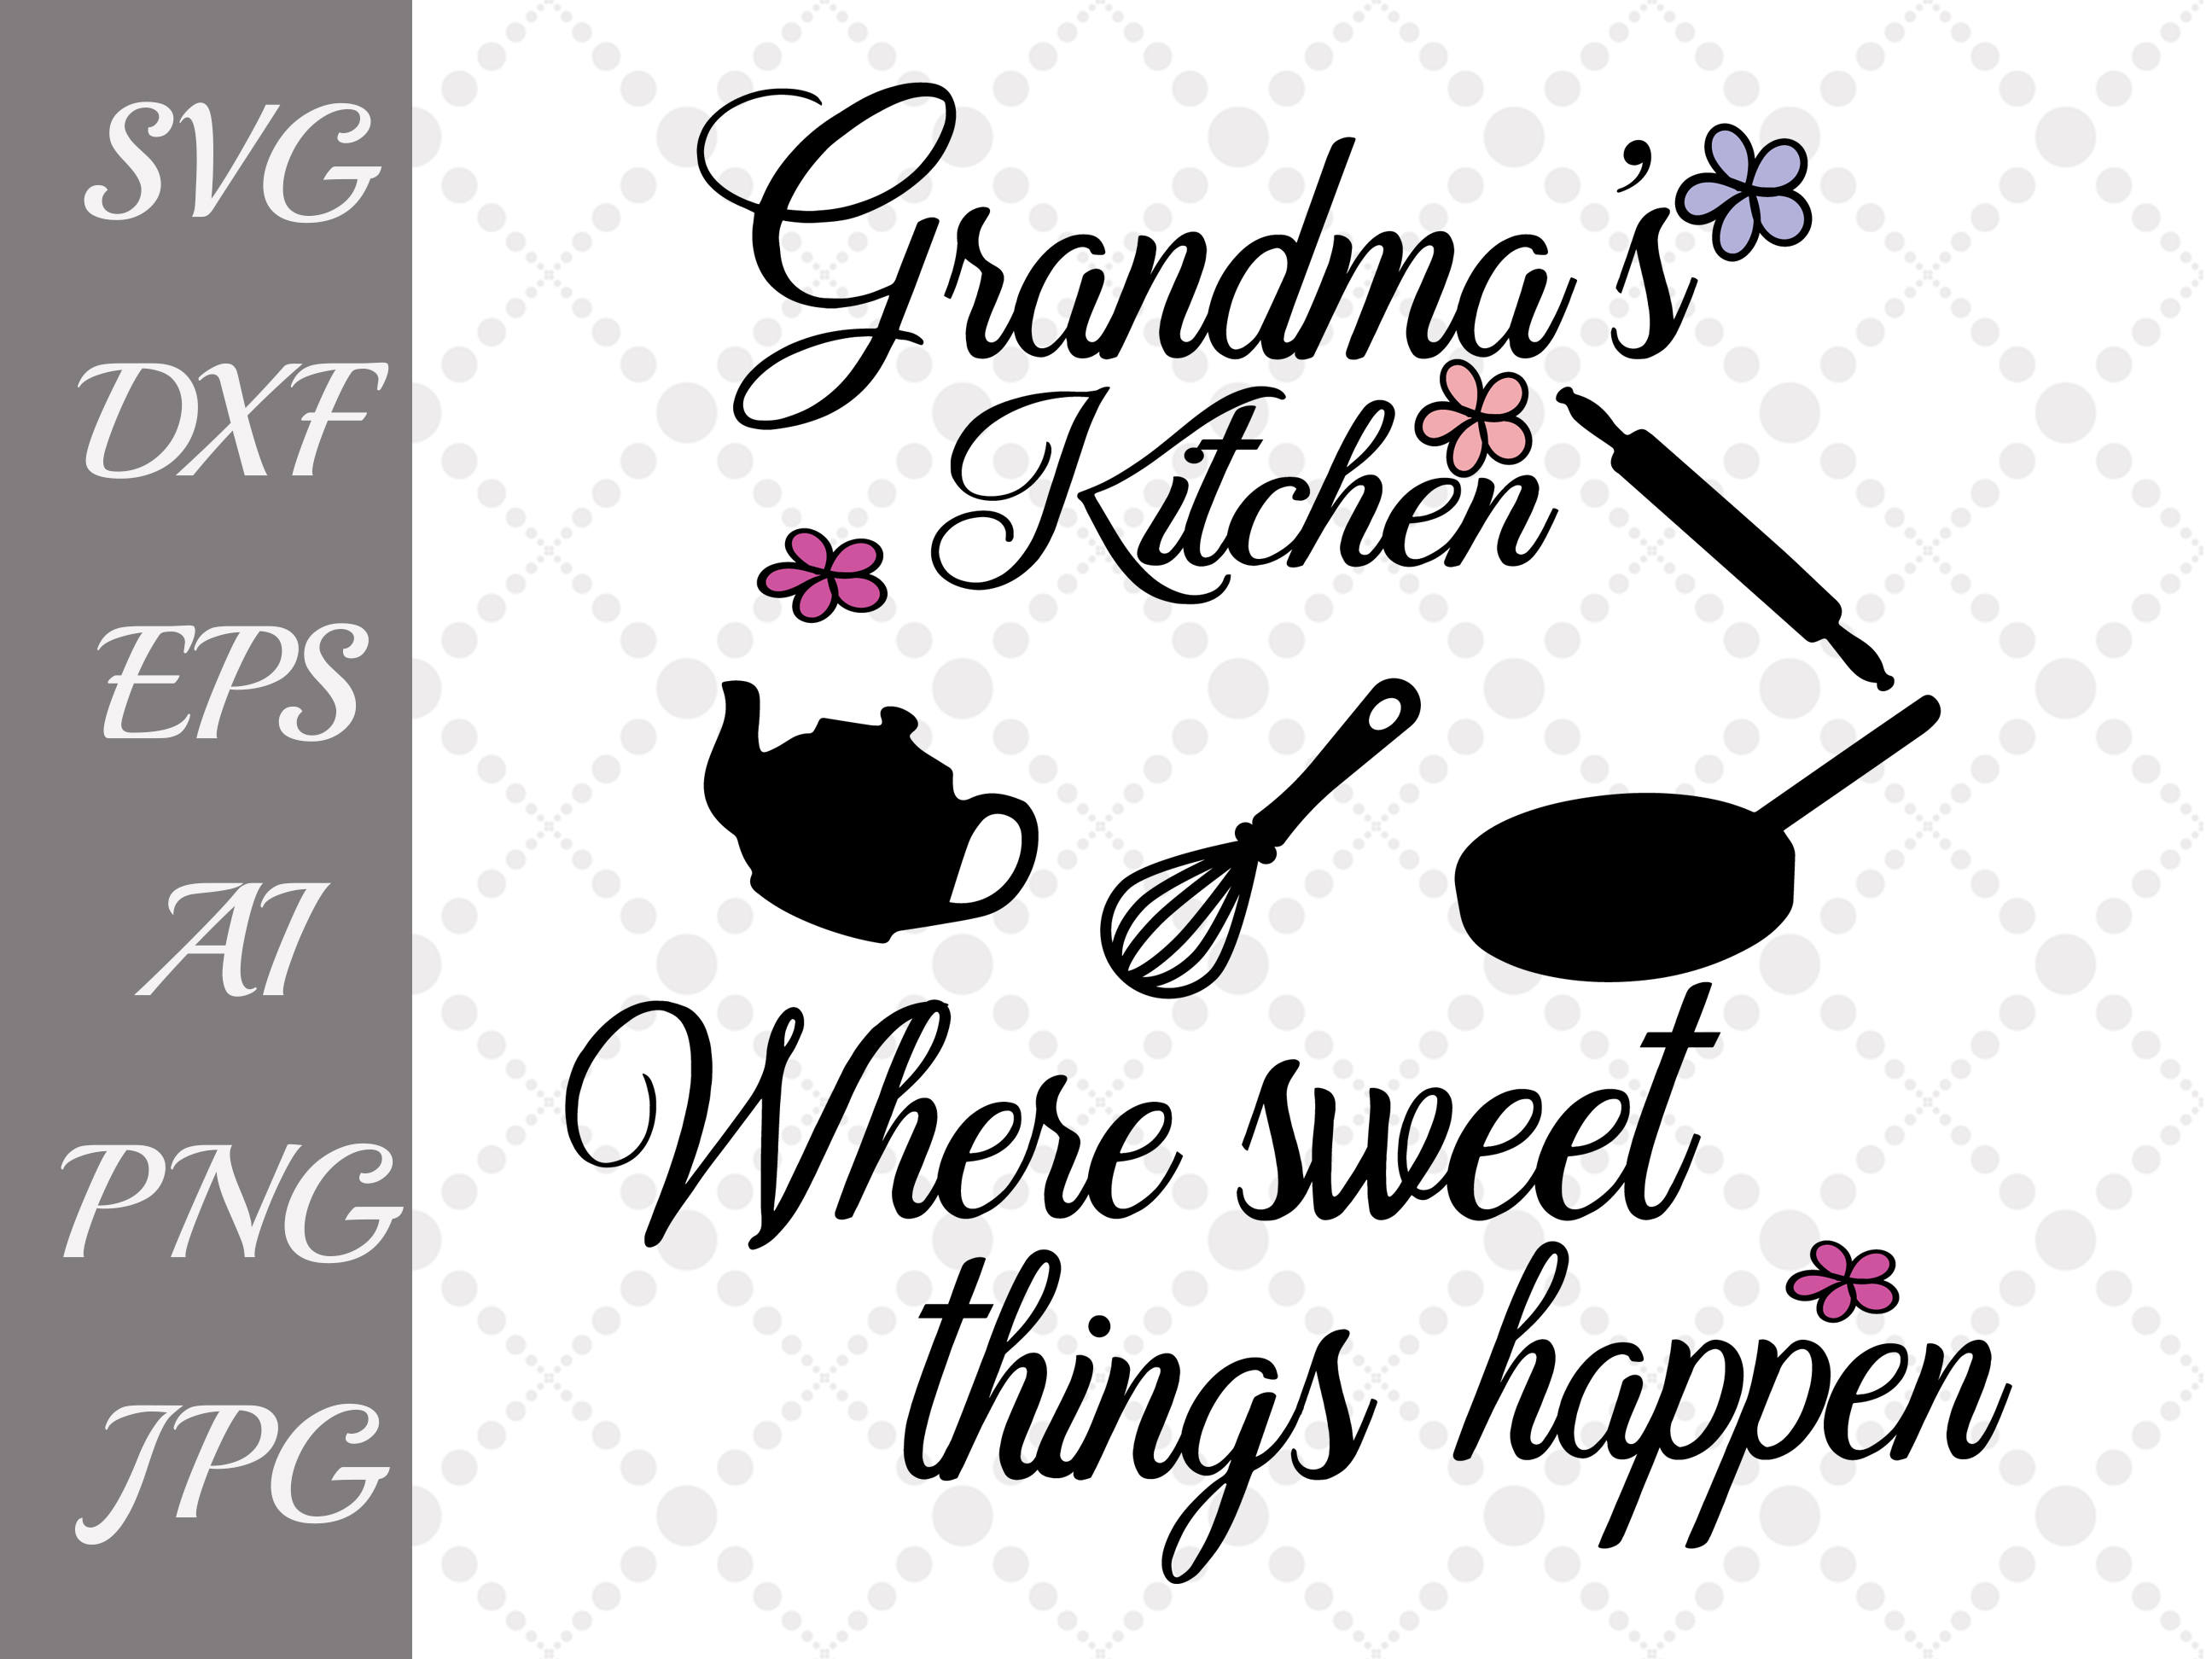 Grandma's Kitchen Svg: "KITCHEN QUOTE SVG" T-Shirt Svg,Kitch...